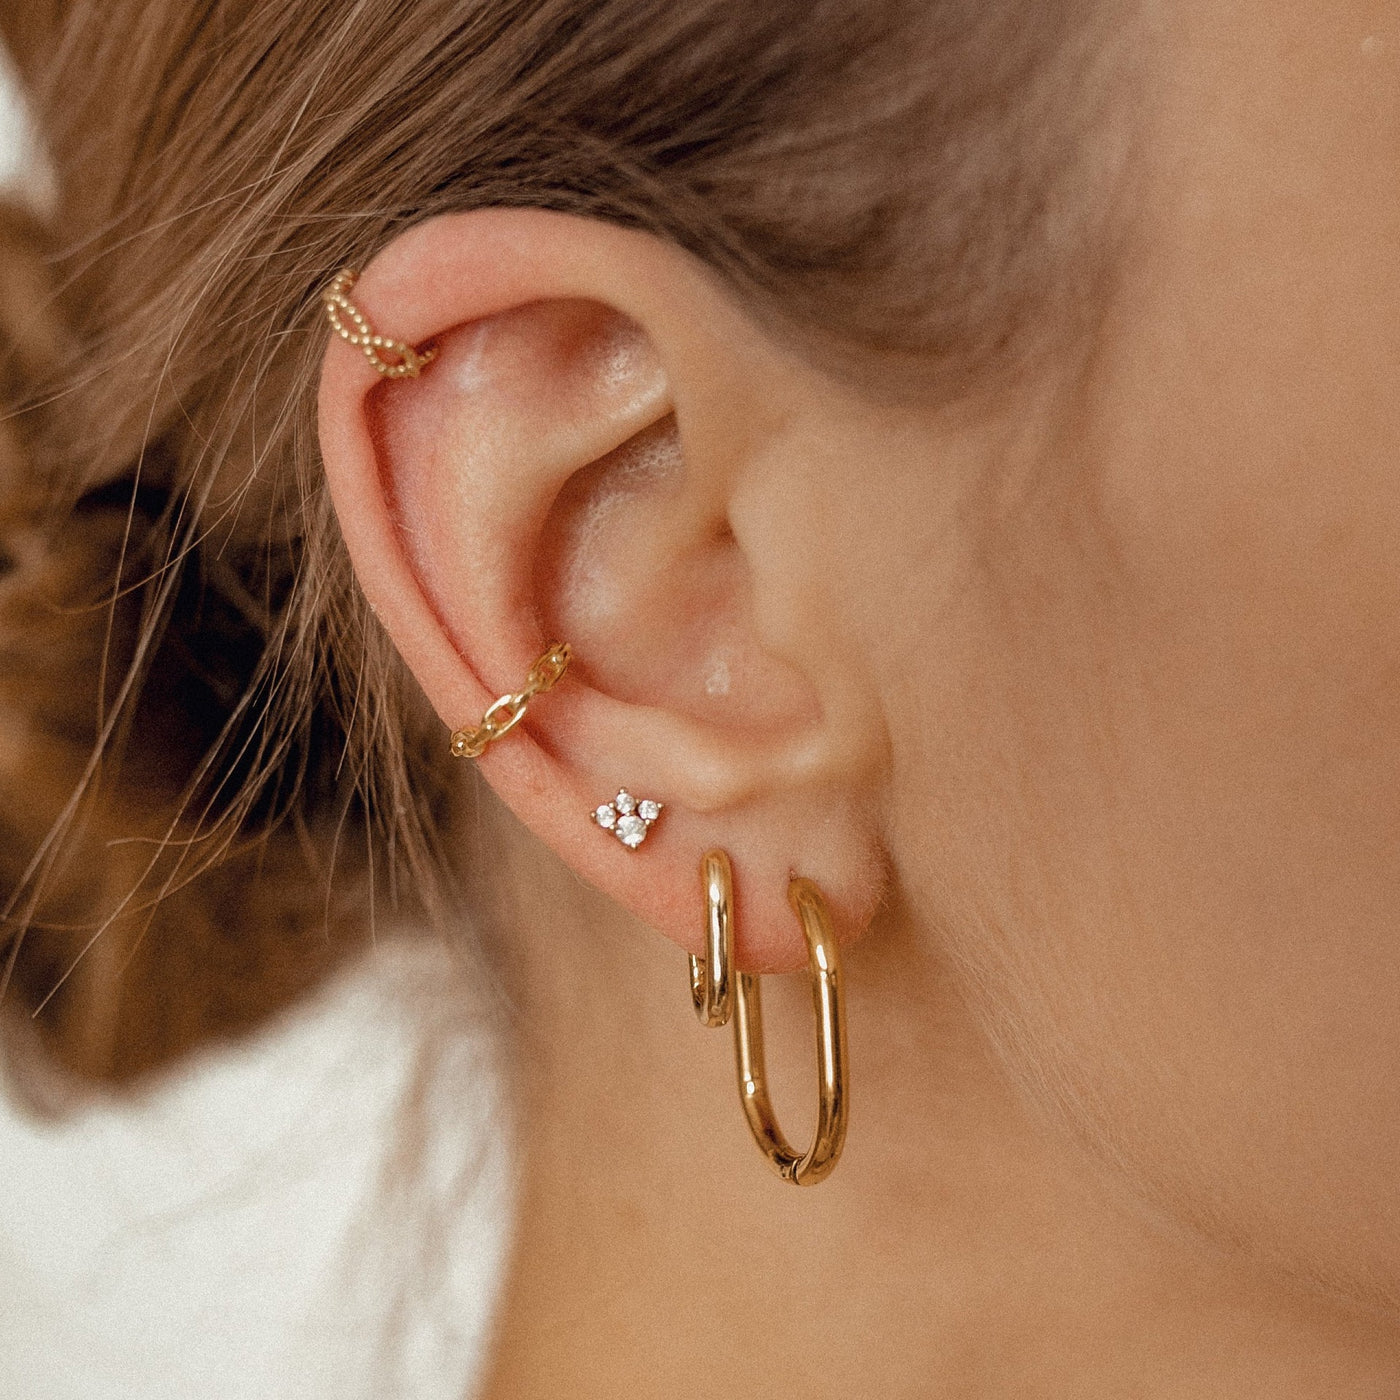 Thin Oval Hoop Earrings Gold